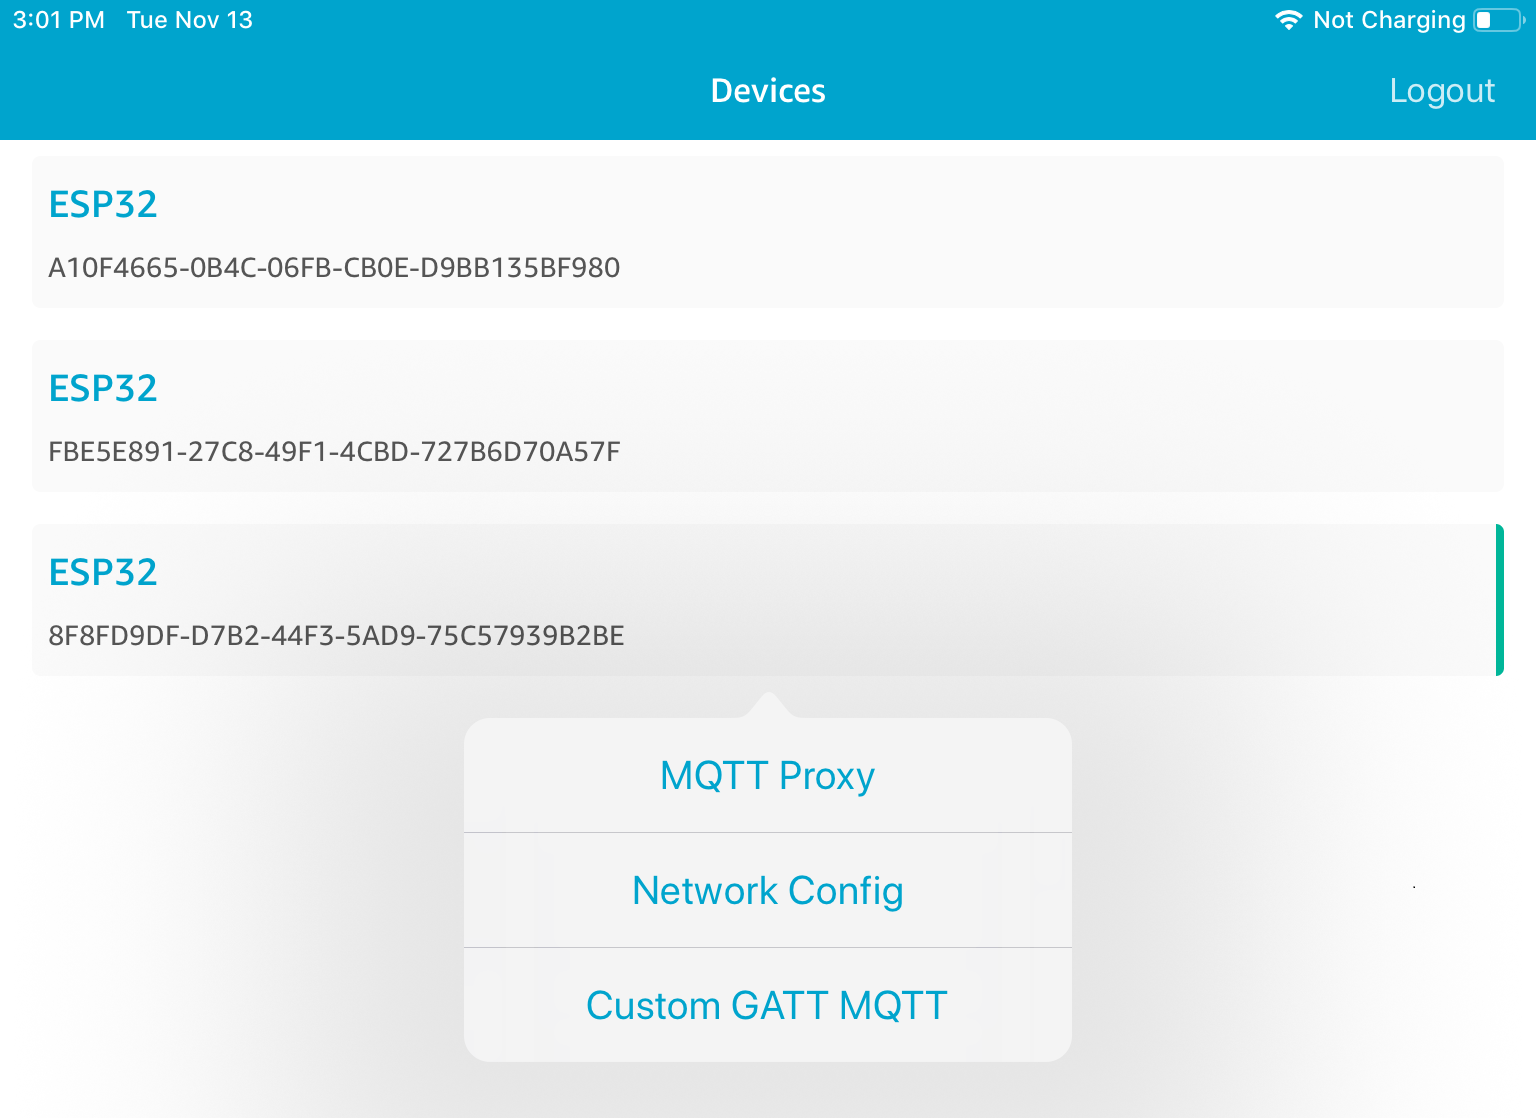 List of three ESP32 device IDs, with MQTT Proxy, Network Config, and Custom GATT MQTT options below.